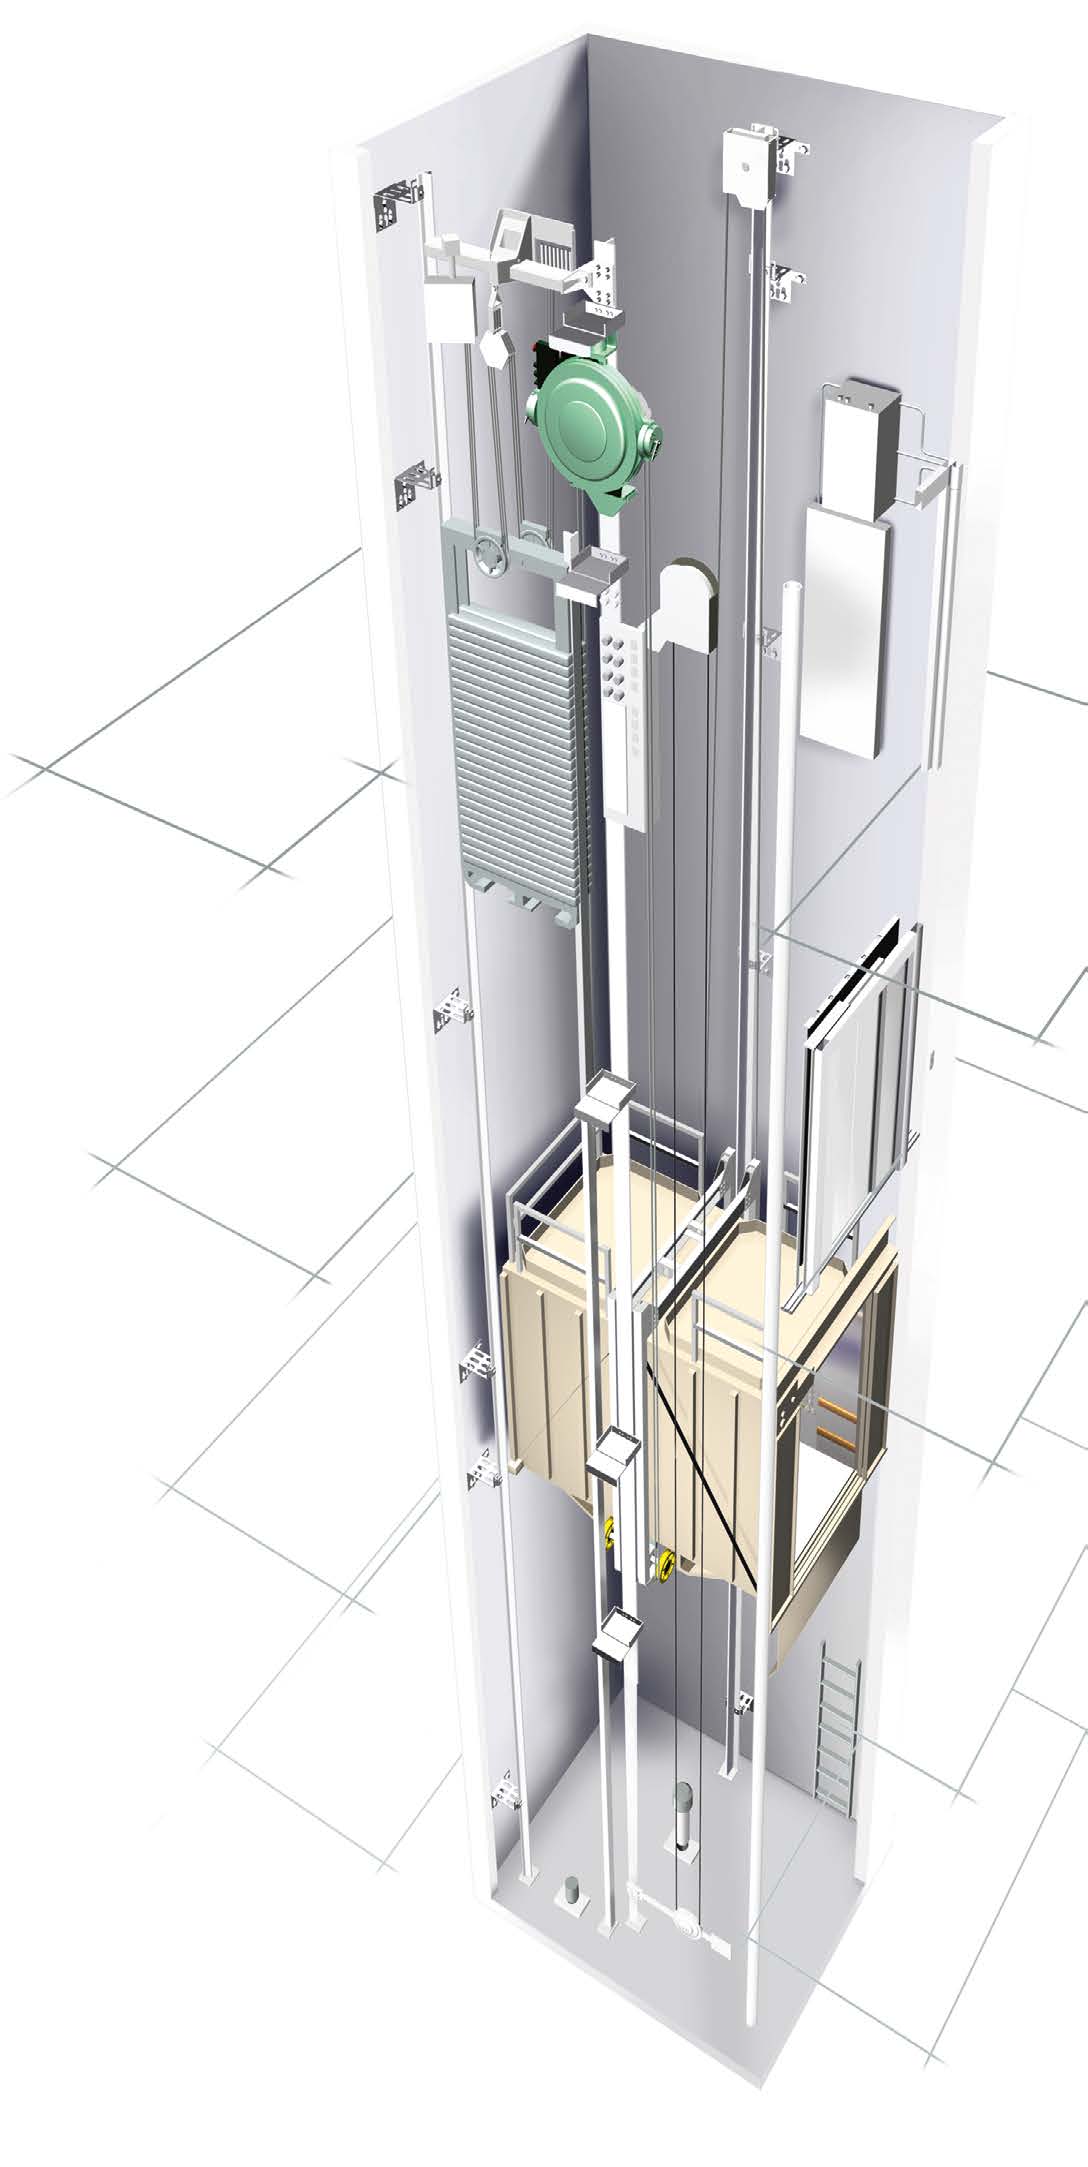 Più capacità di sollevamento, maggior risparmio energetico Capacità di sollevamento fino a 5.000 kg L ascensore montacarichi KONE TranSys è basato sulla tecnologia KONE MonoSpace.